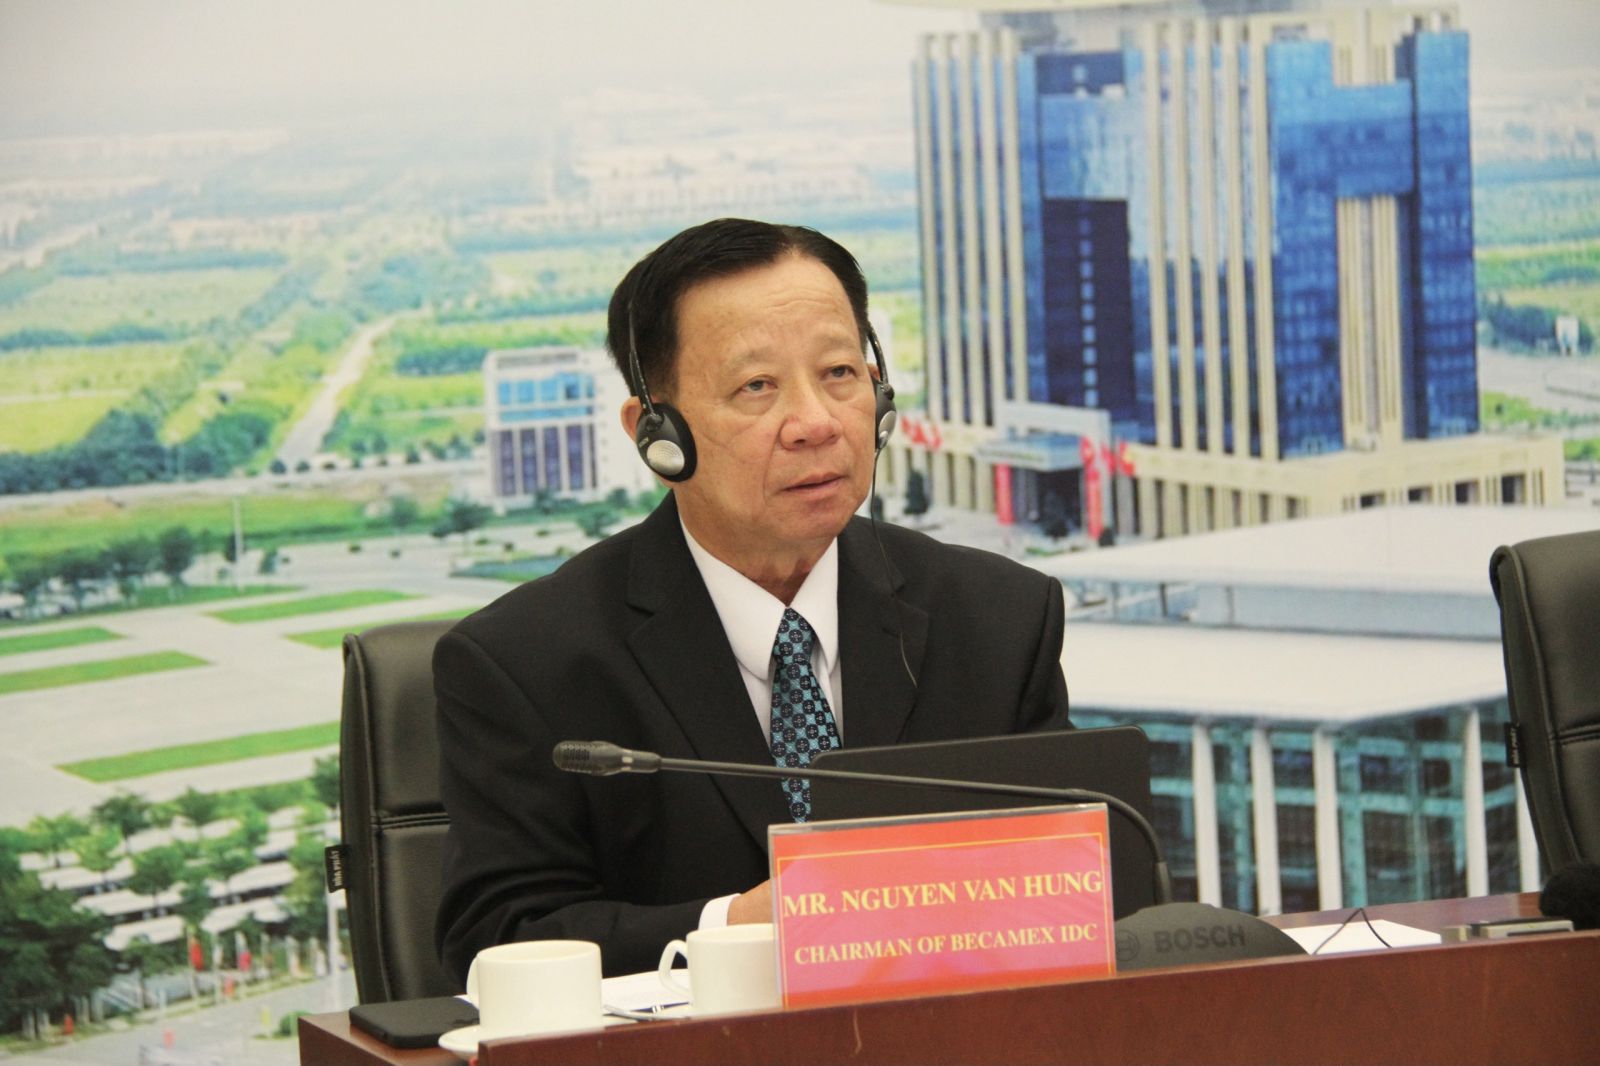 Ông Nguyễn Văn Hùng, Chủ tịch HĐQT Becamex IDC phát biểu tại lễ ký kết hợp tác ở điểm cầu tỉnh Bình Dương.